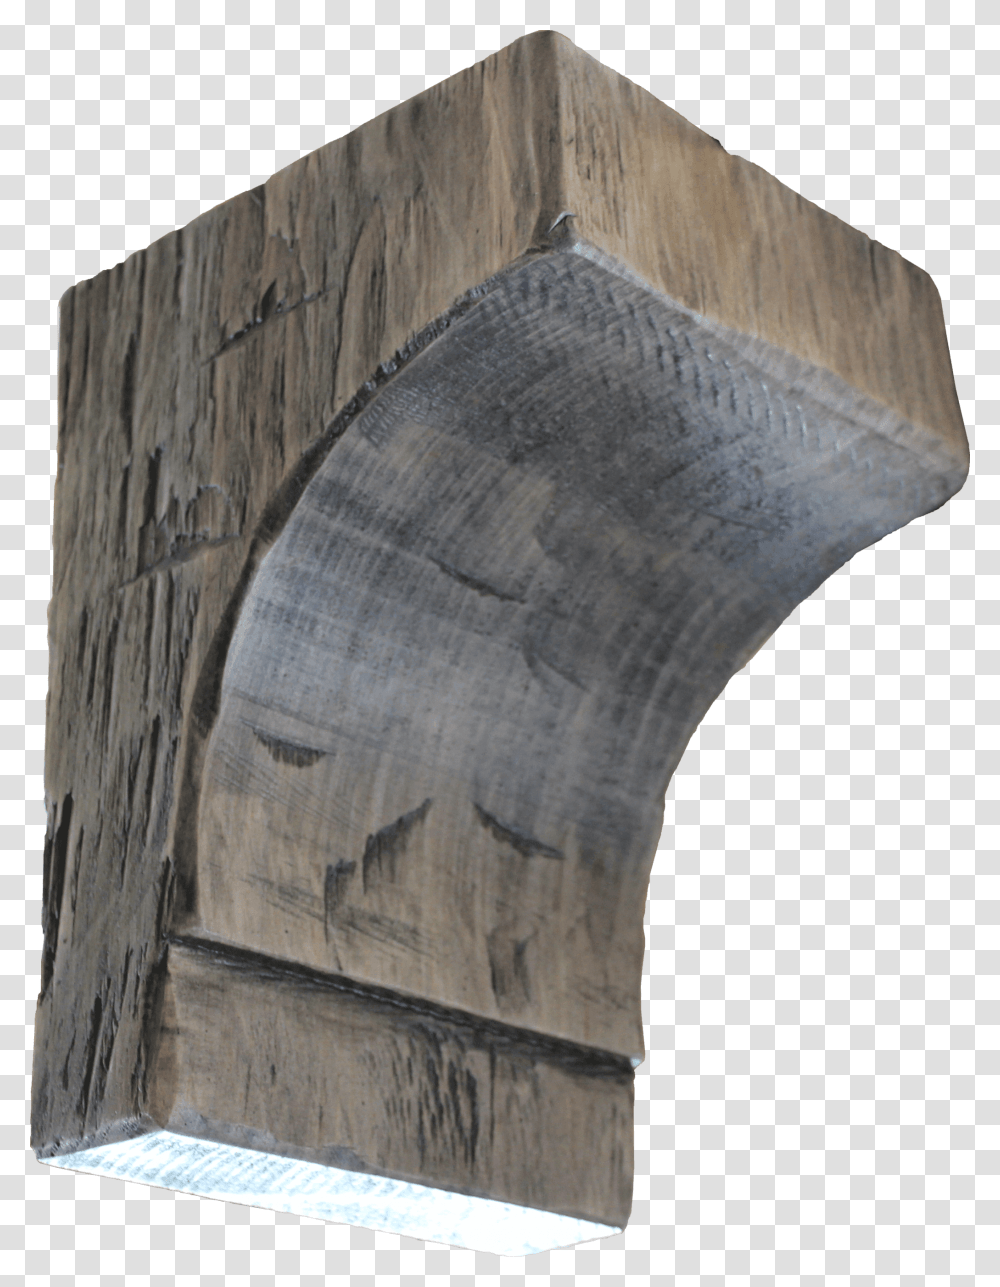 Plank, Wood, Building, Architecture, Monument Transparent Png